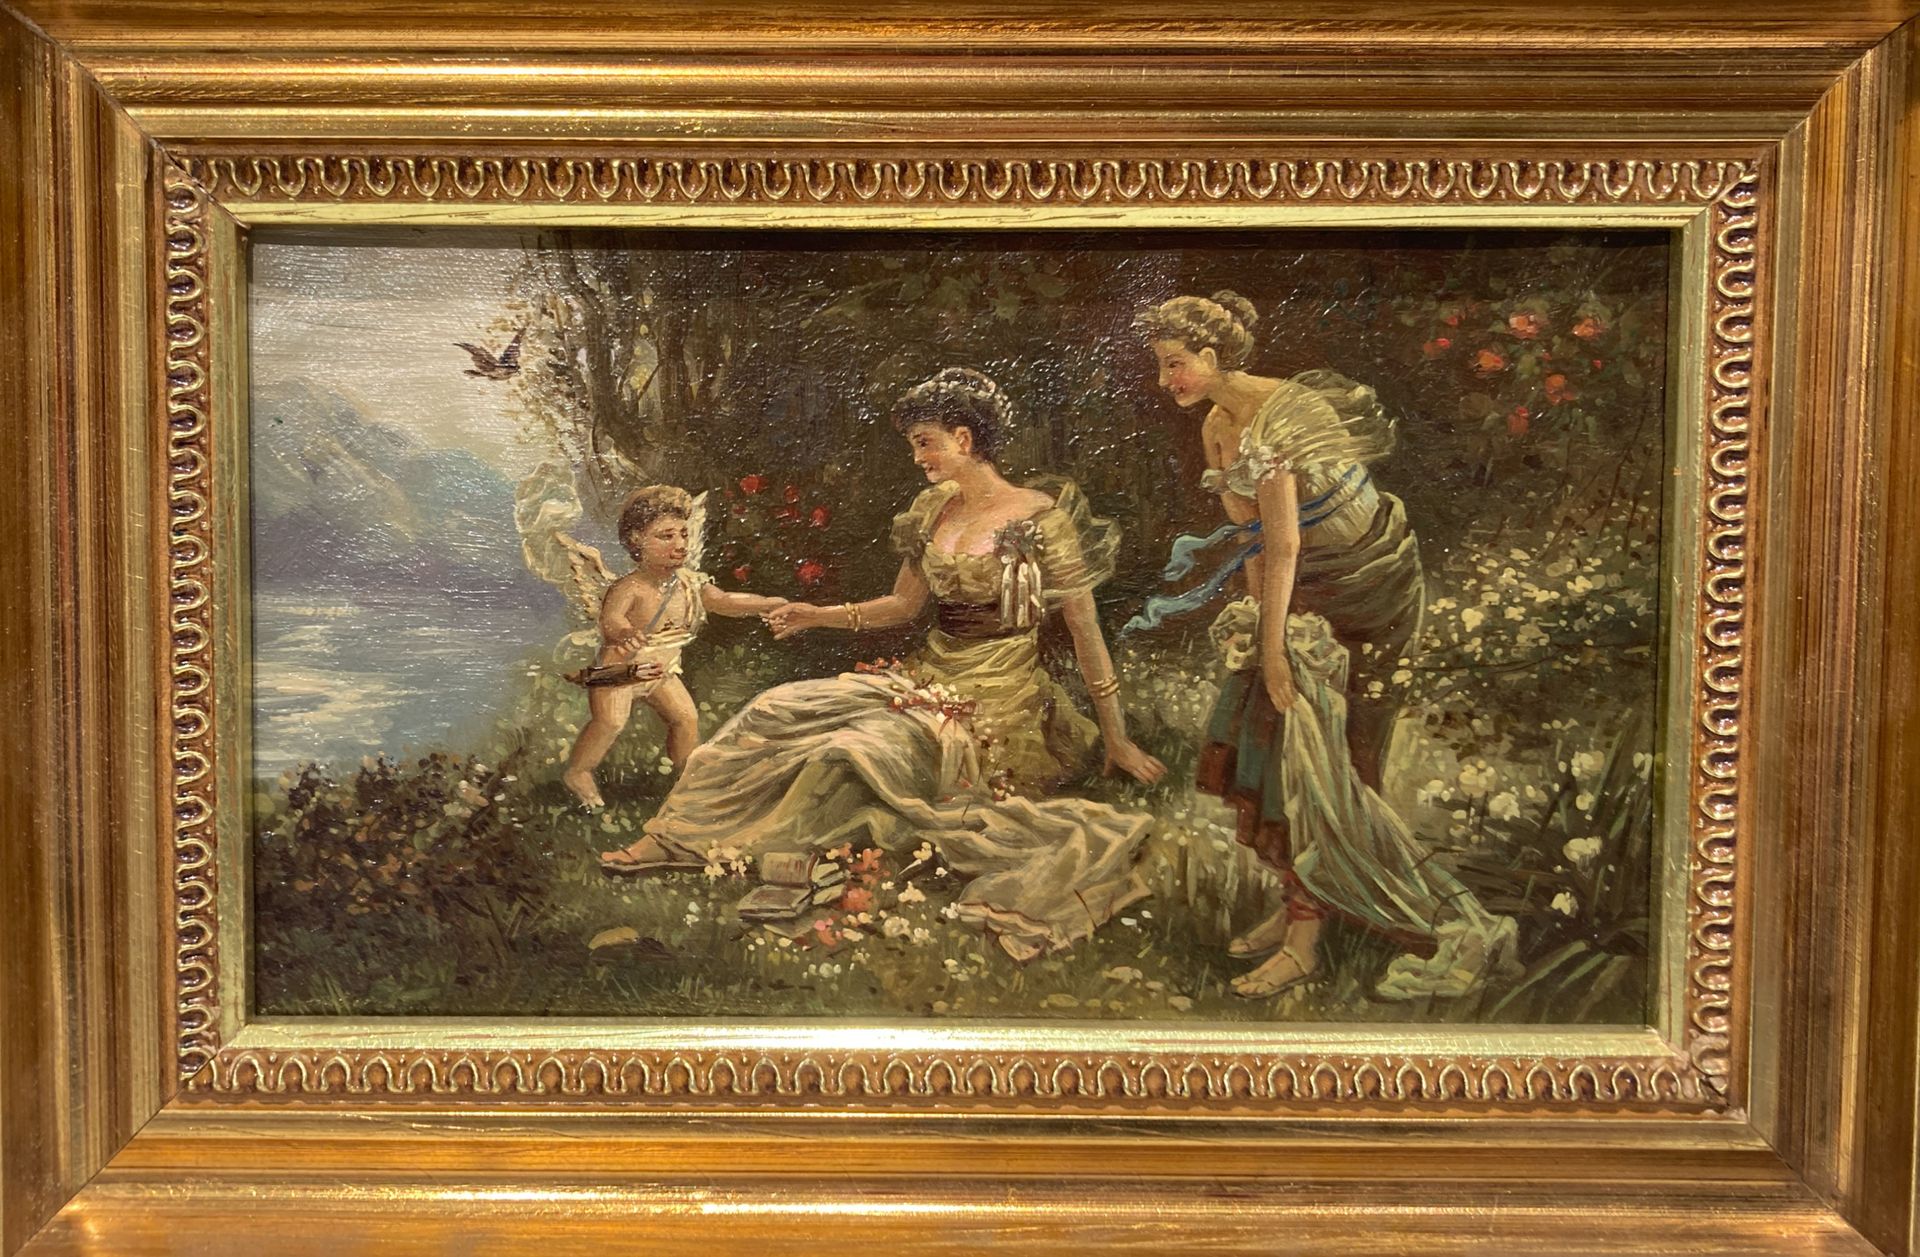 Null Scuola francese del XIX secolo

Scena del parco

Olio su tela

14 x 25 cm